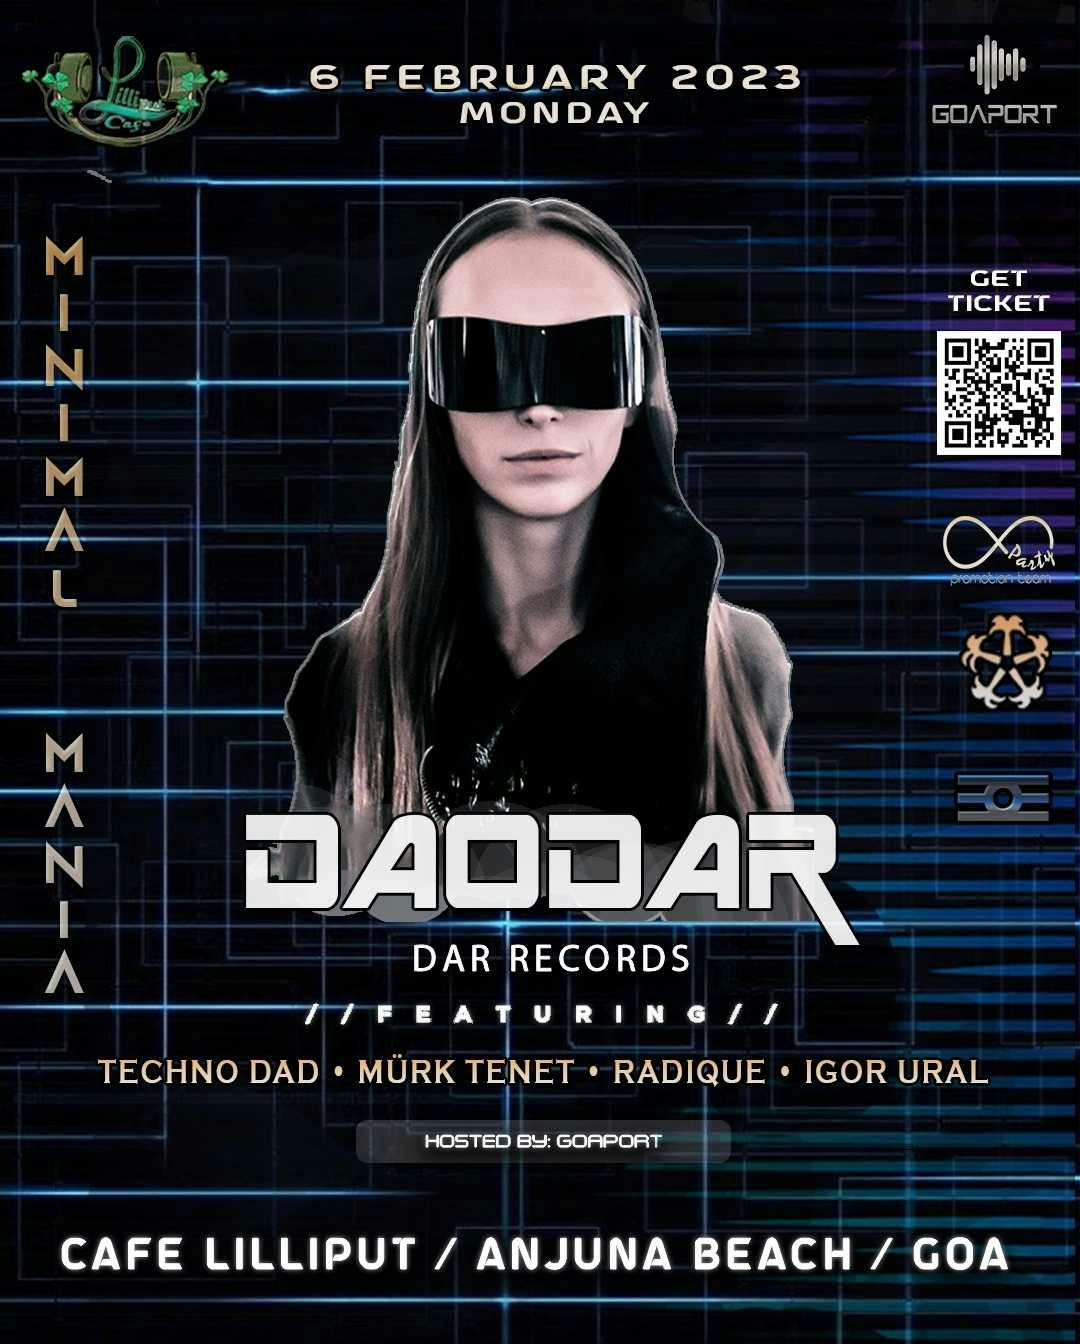 Daddar - Dar Records